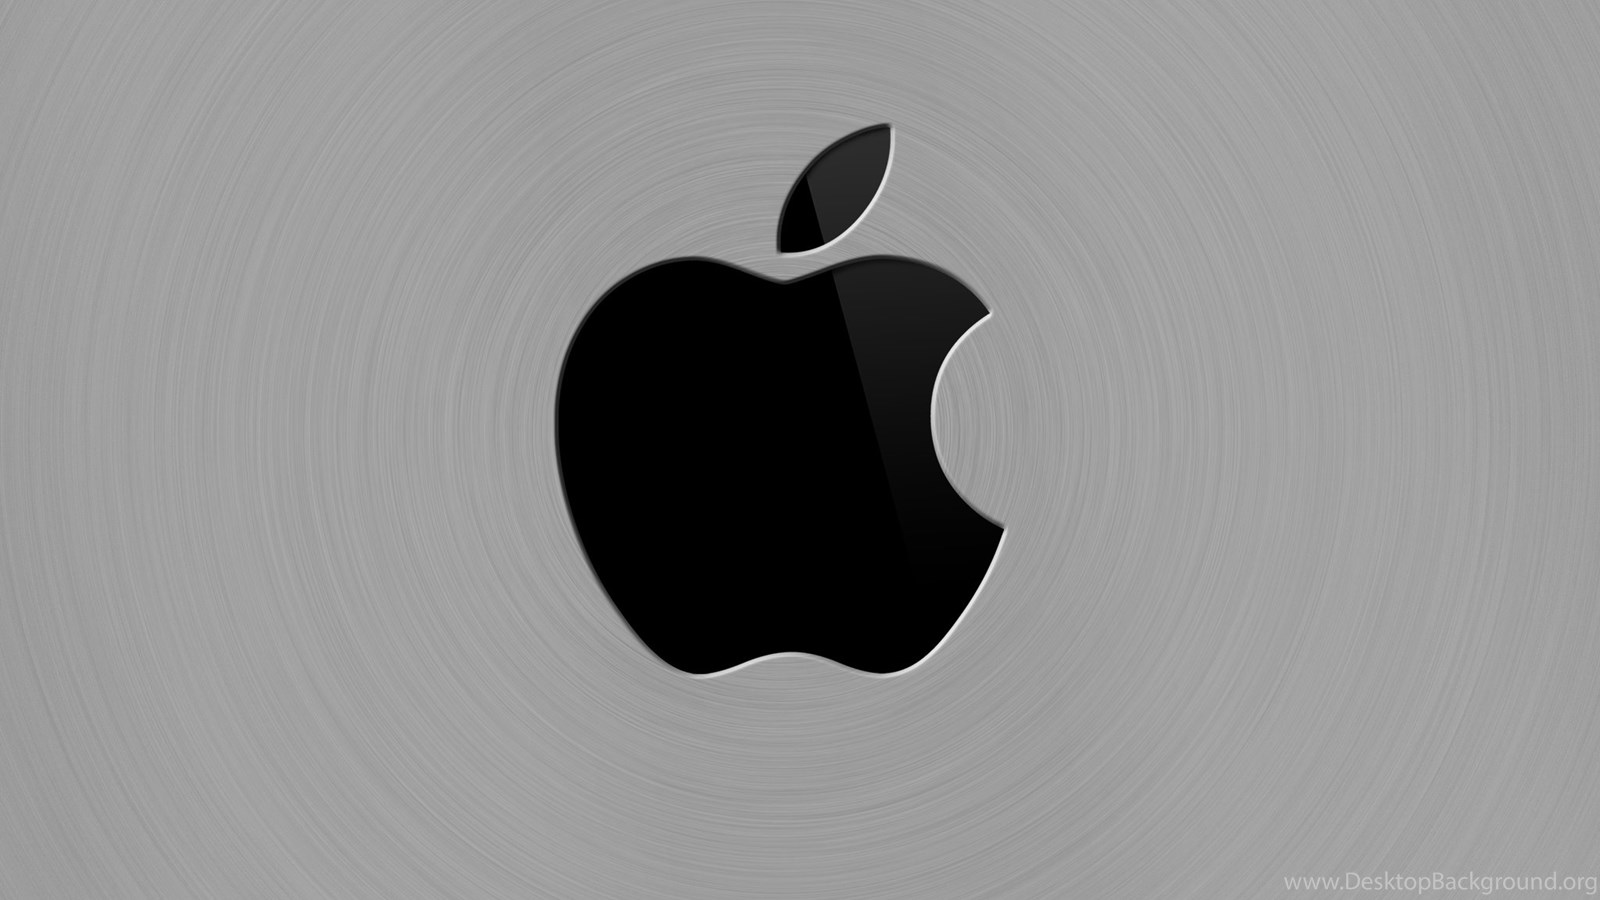 Обои на айфон яблоко. Логотип Apple. Iphone логотип. Яблоко айфон. Логотип айфона яблоко.